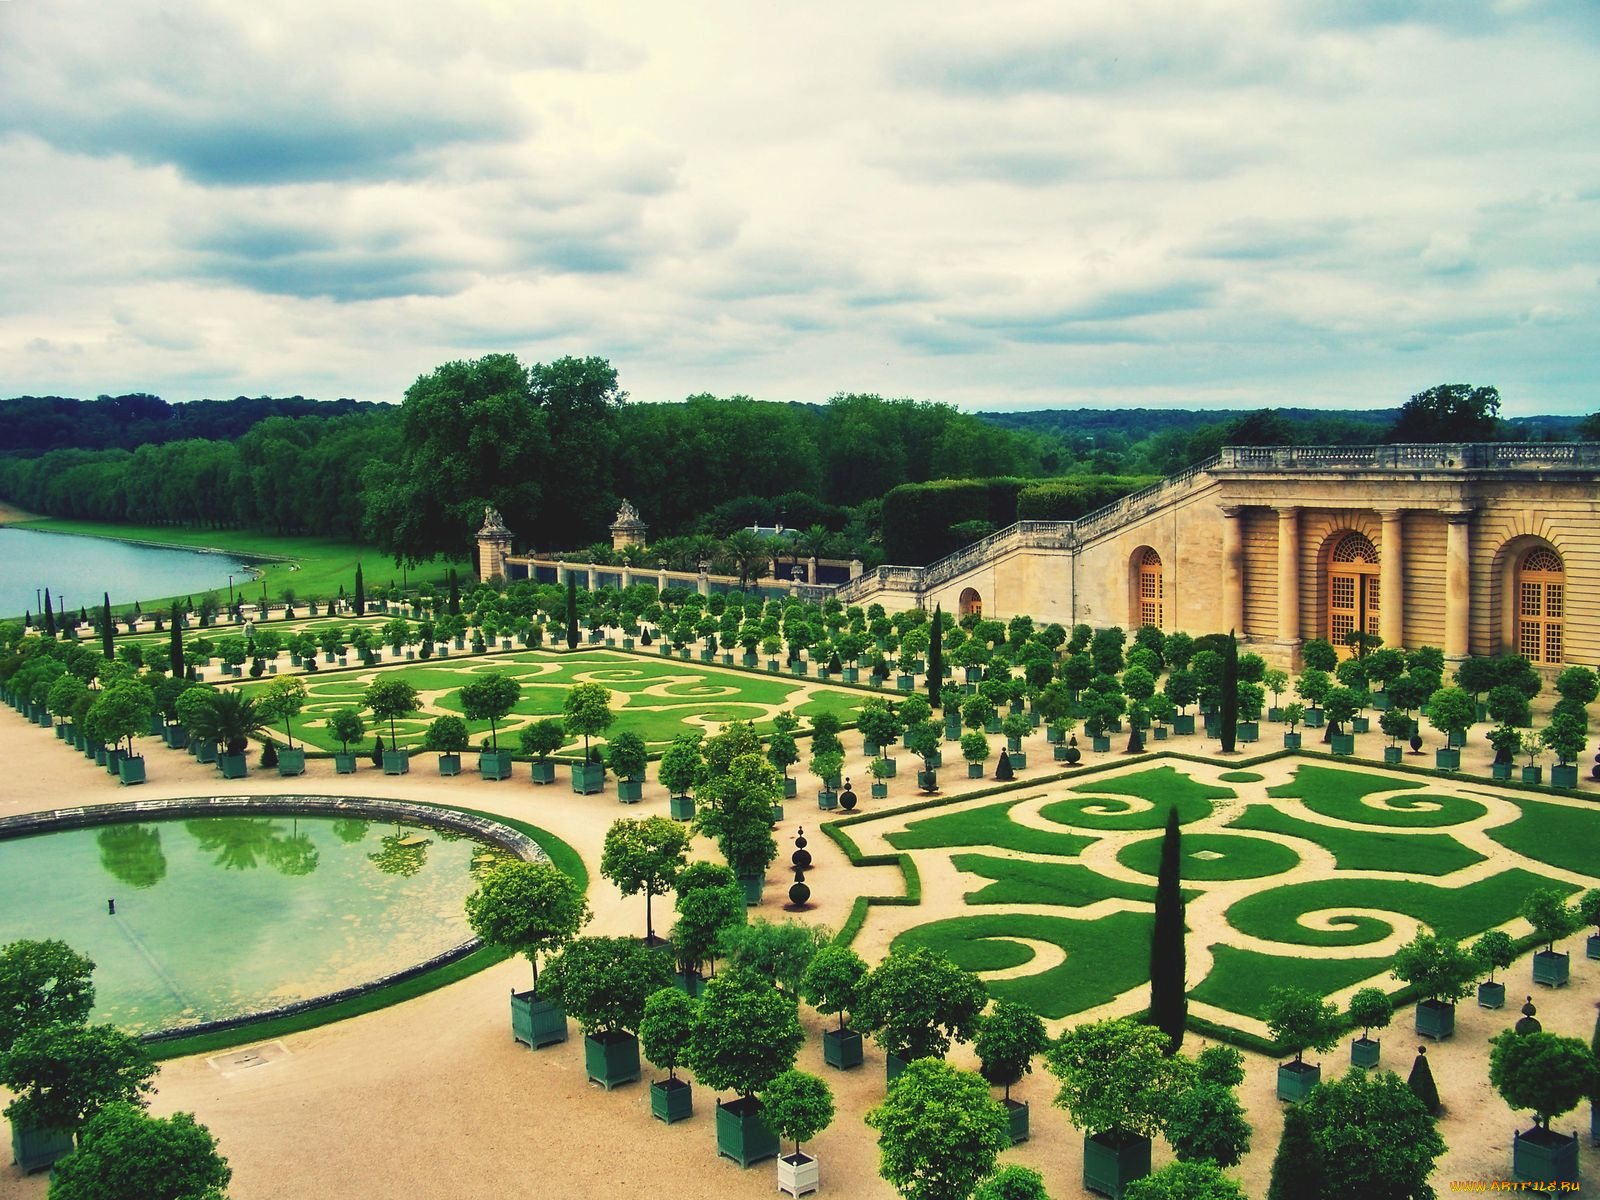 Chateau versailles. Версальский дворец и сады. Версальский дворцово-парковый ансамбль. Дворец Версаль версальный парк. Парковый ансамбль Версаля во Франции.